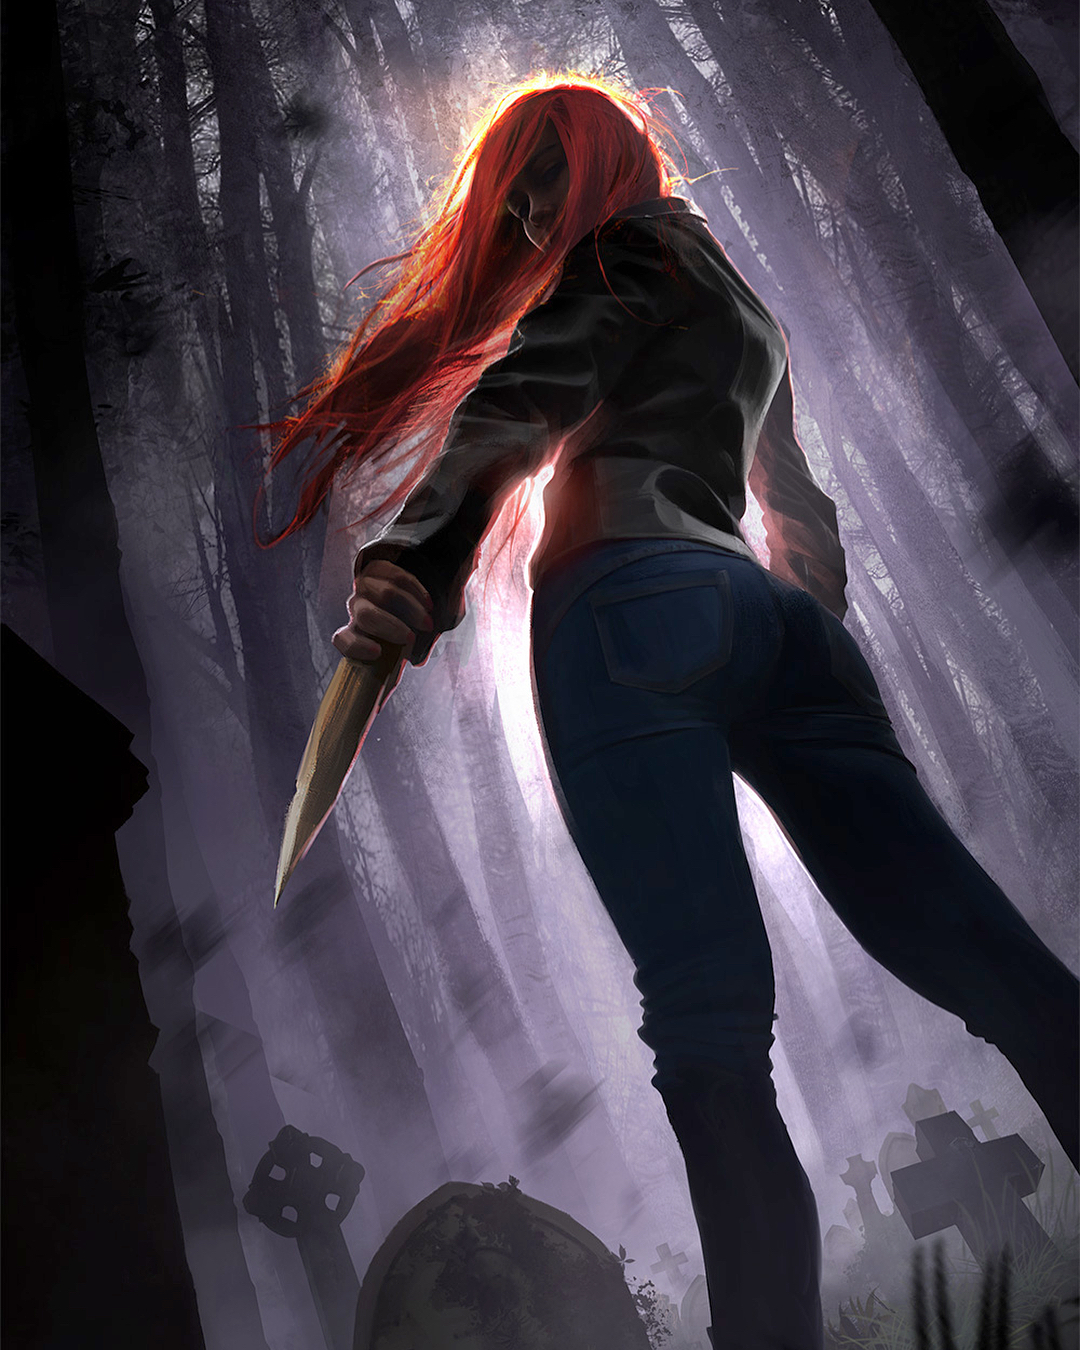 Vampire Knight Cover 2 by Darknana on DeviantArt